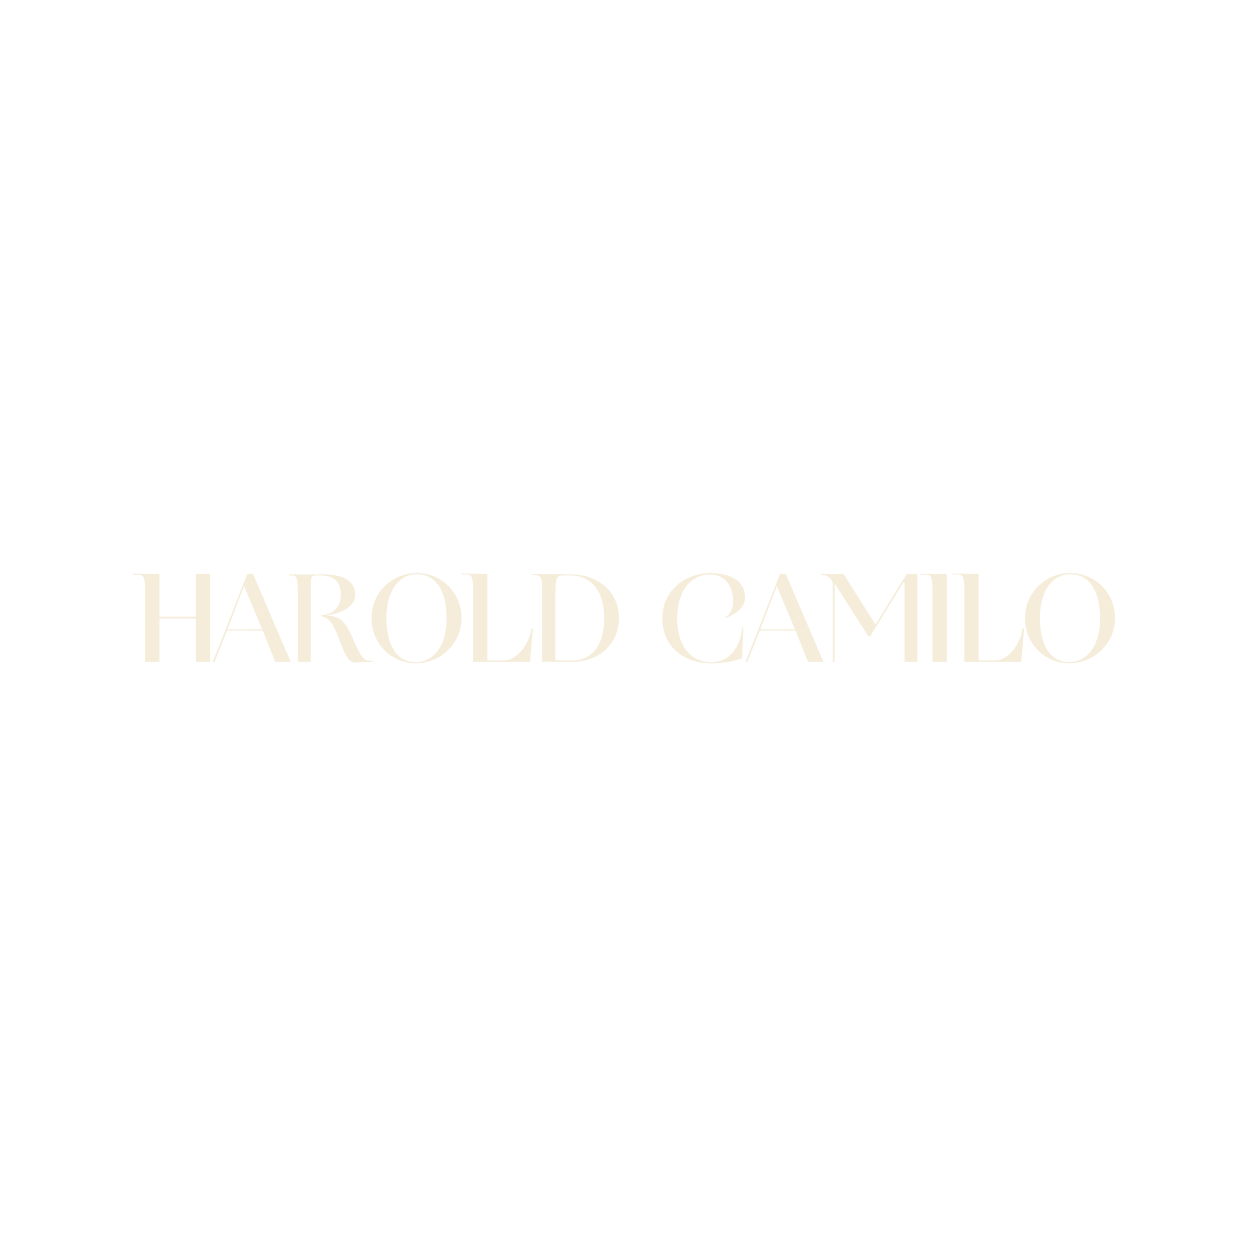 Harold Camilo